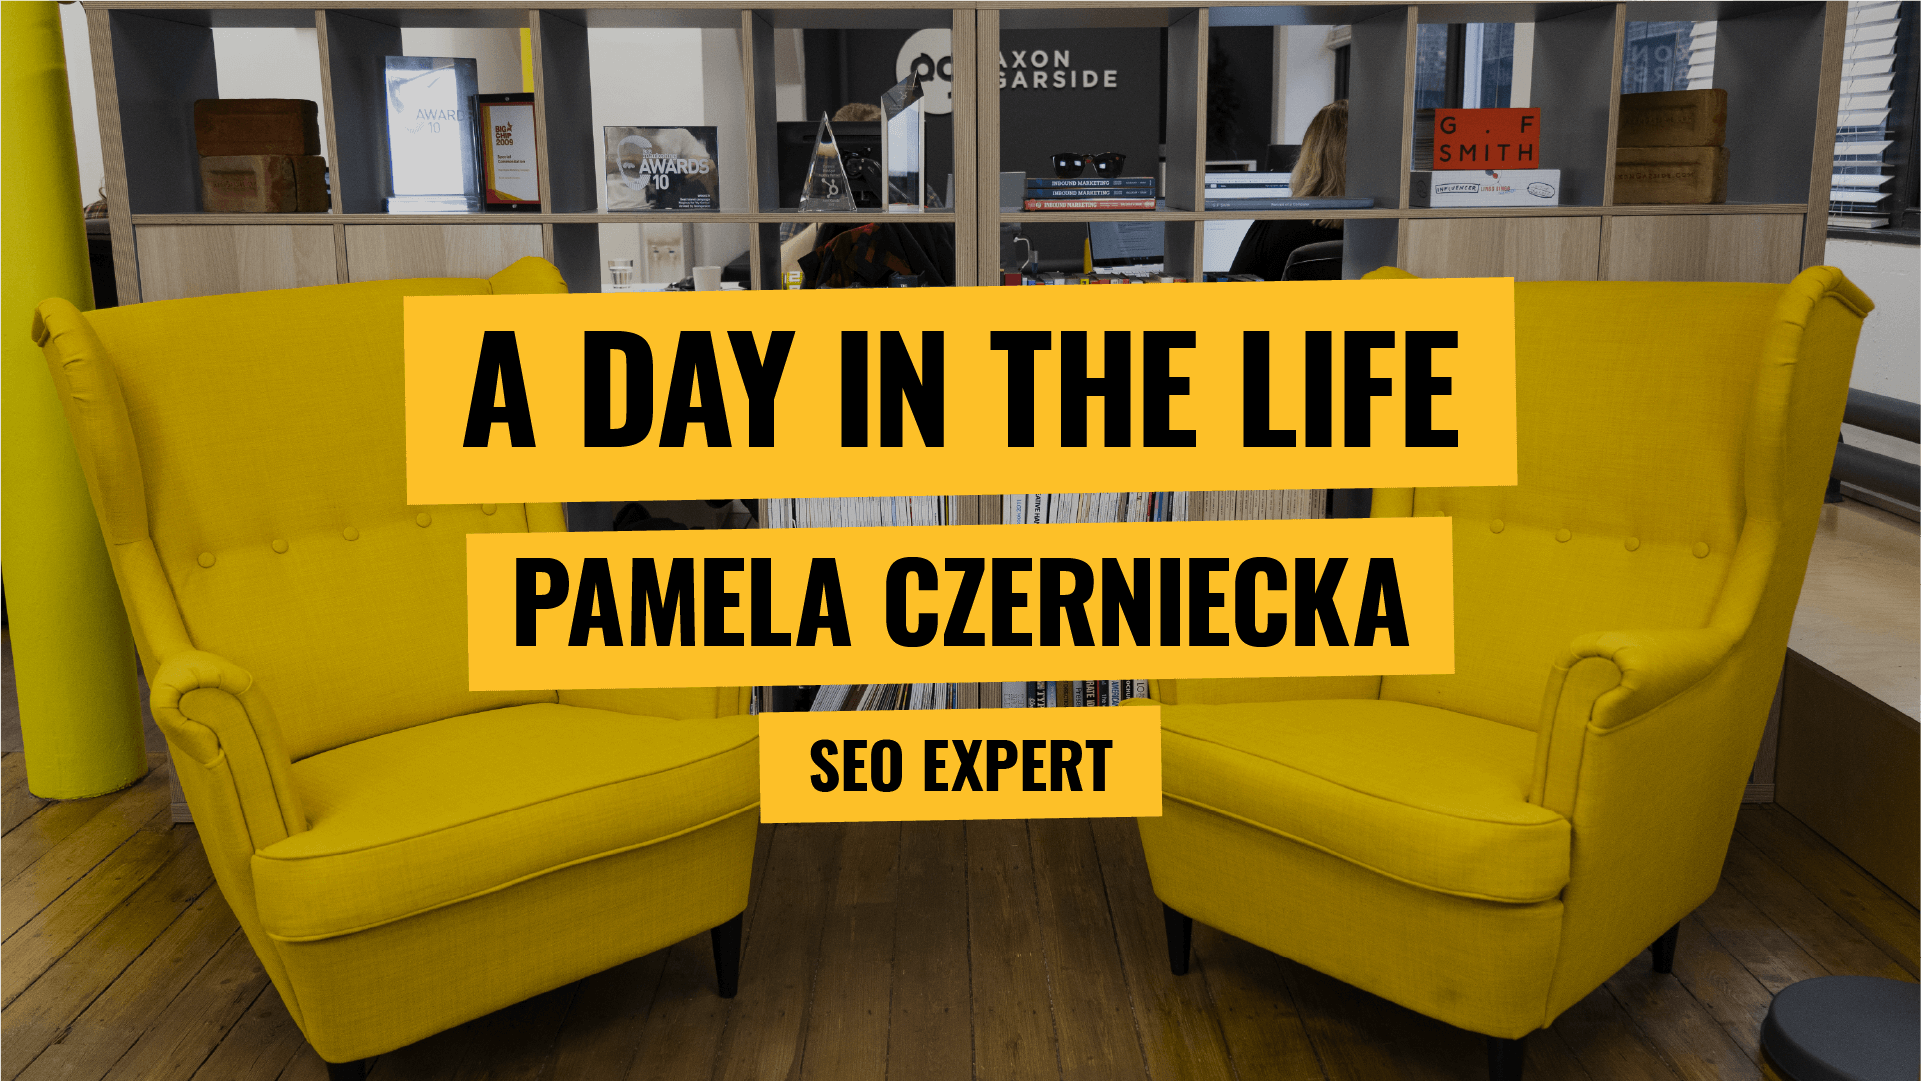 [Video] A day in the life - SEO Expert Pamela Czerniecka